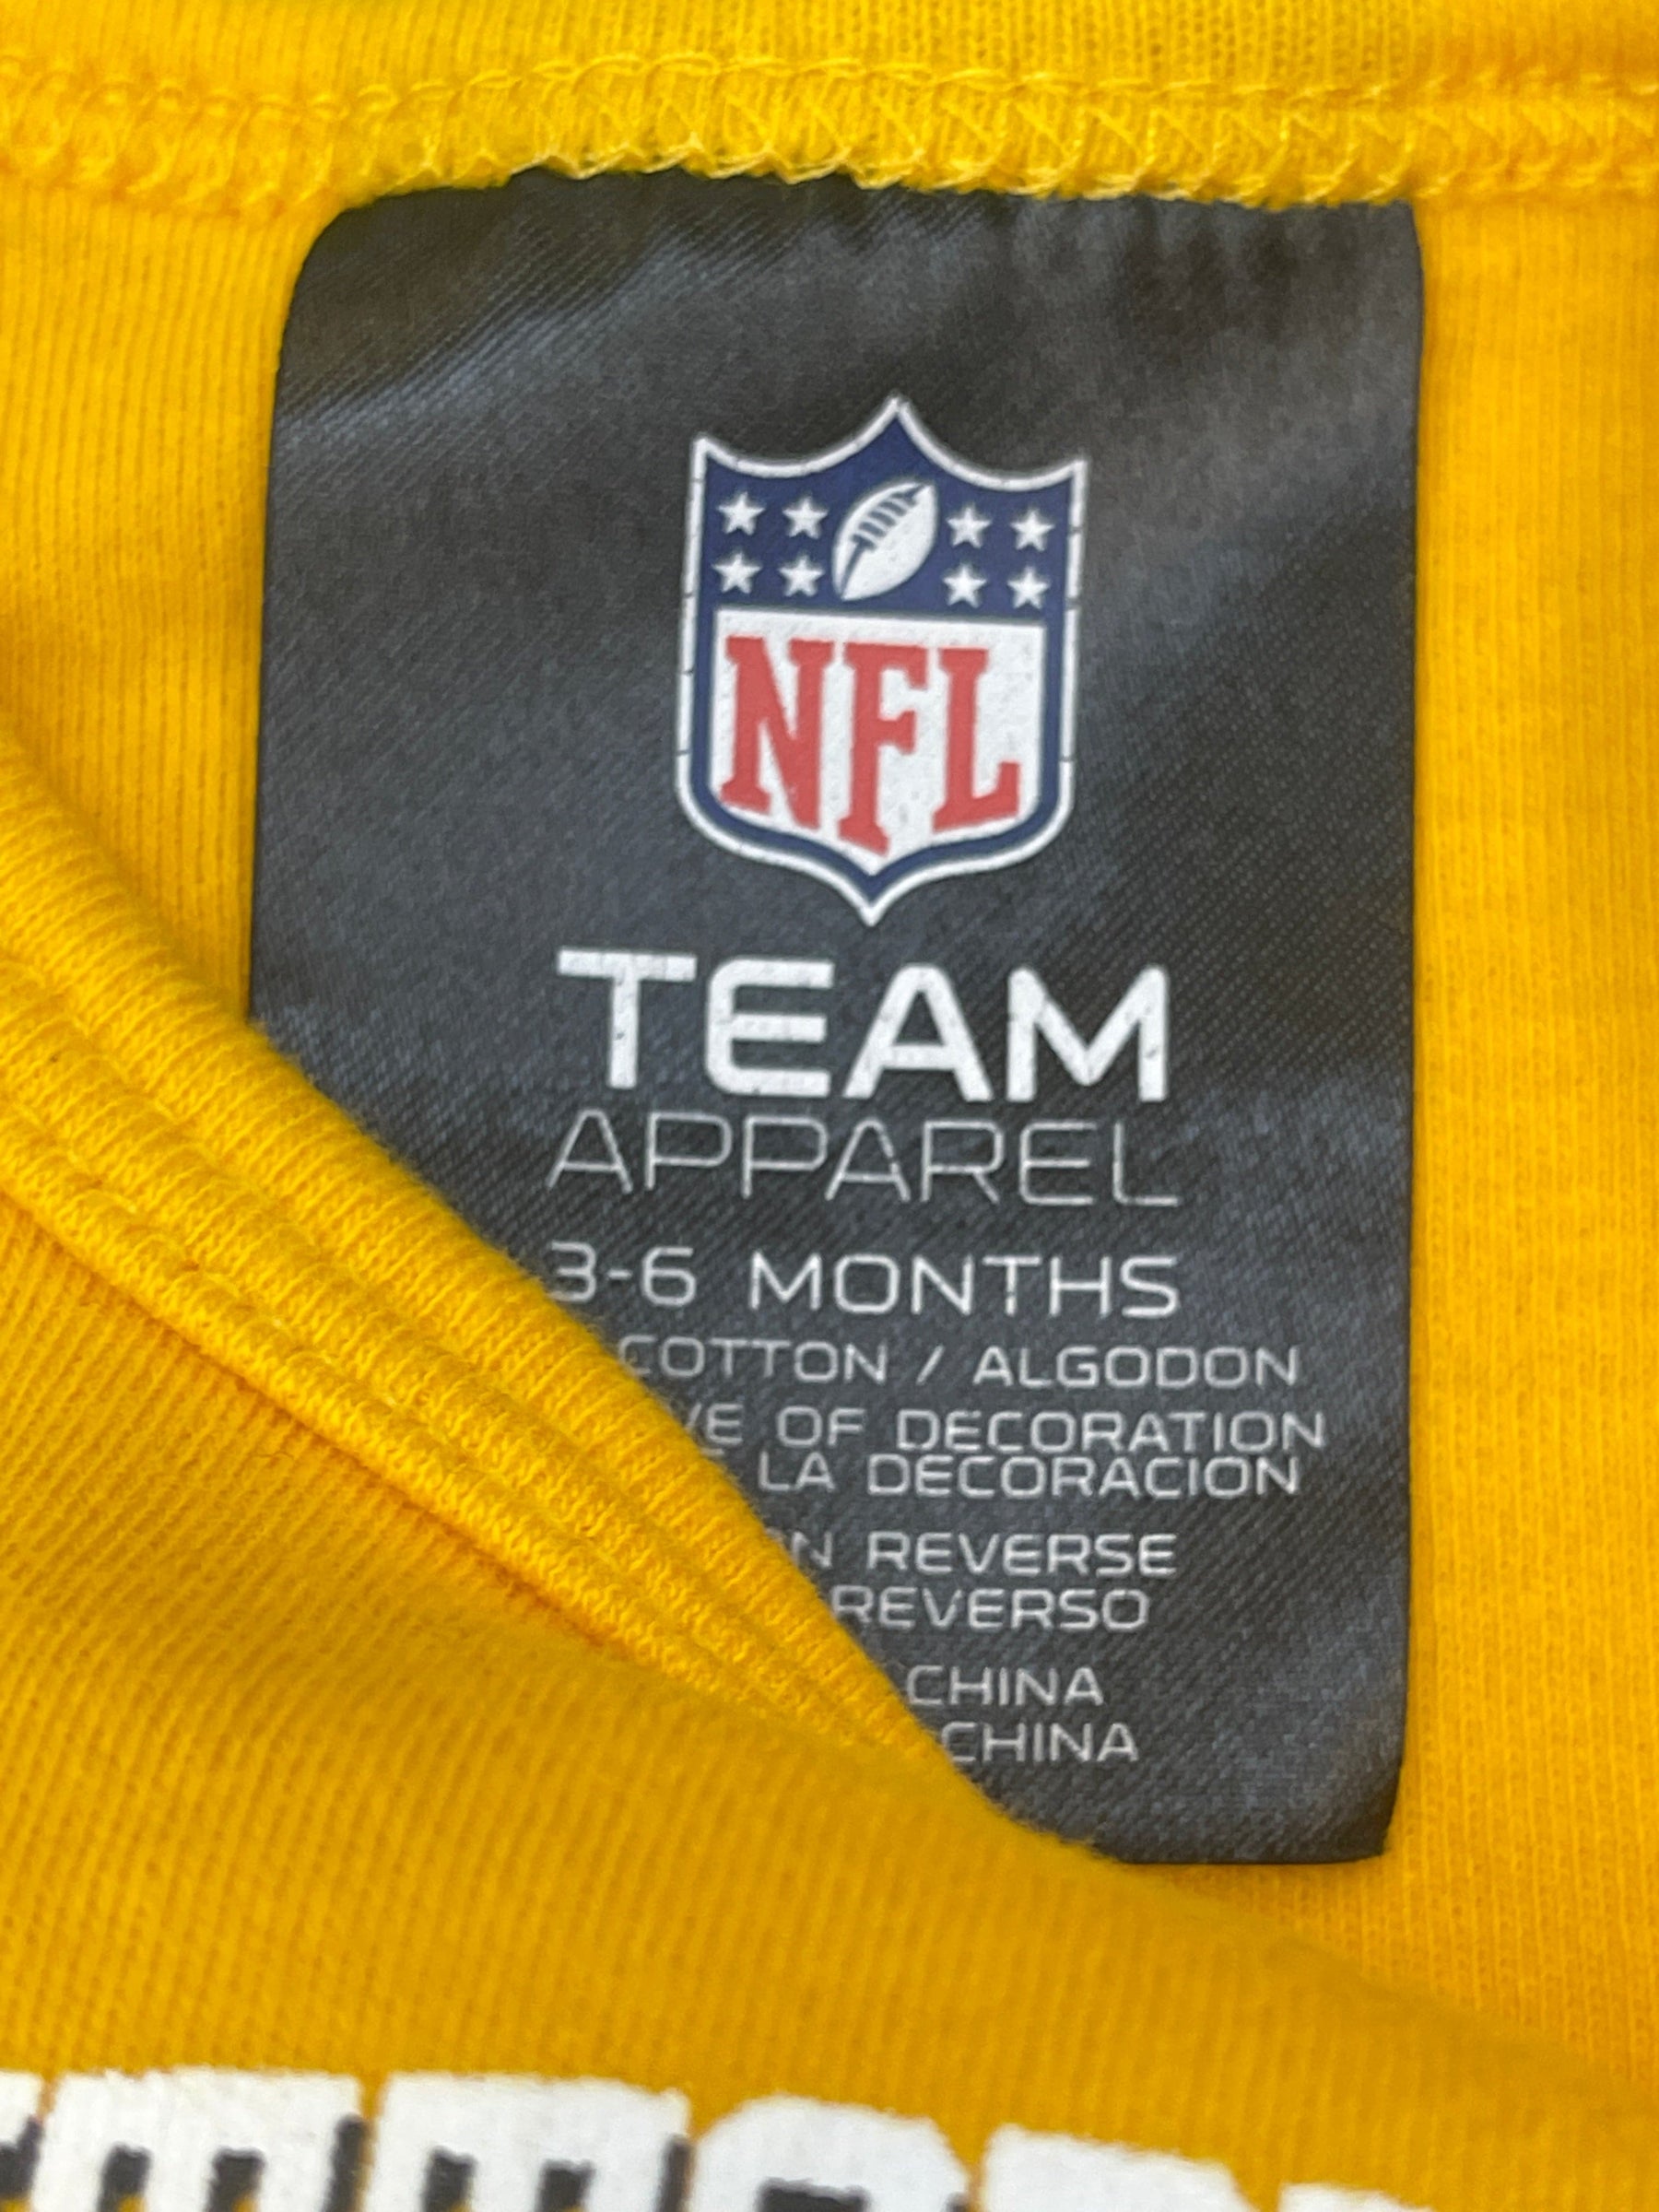 NFL Pittsburgh Steelers 100% Cotton L/S Infant Bodysuit/Vest 3-6 Months